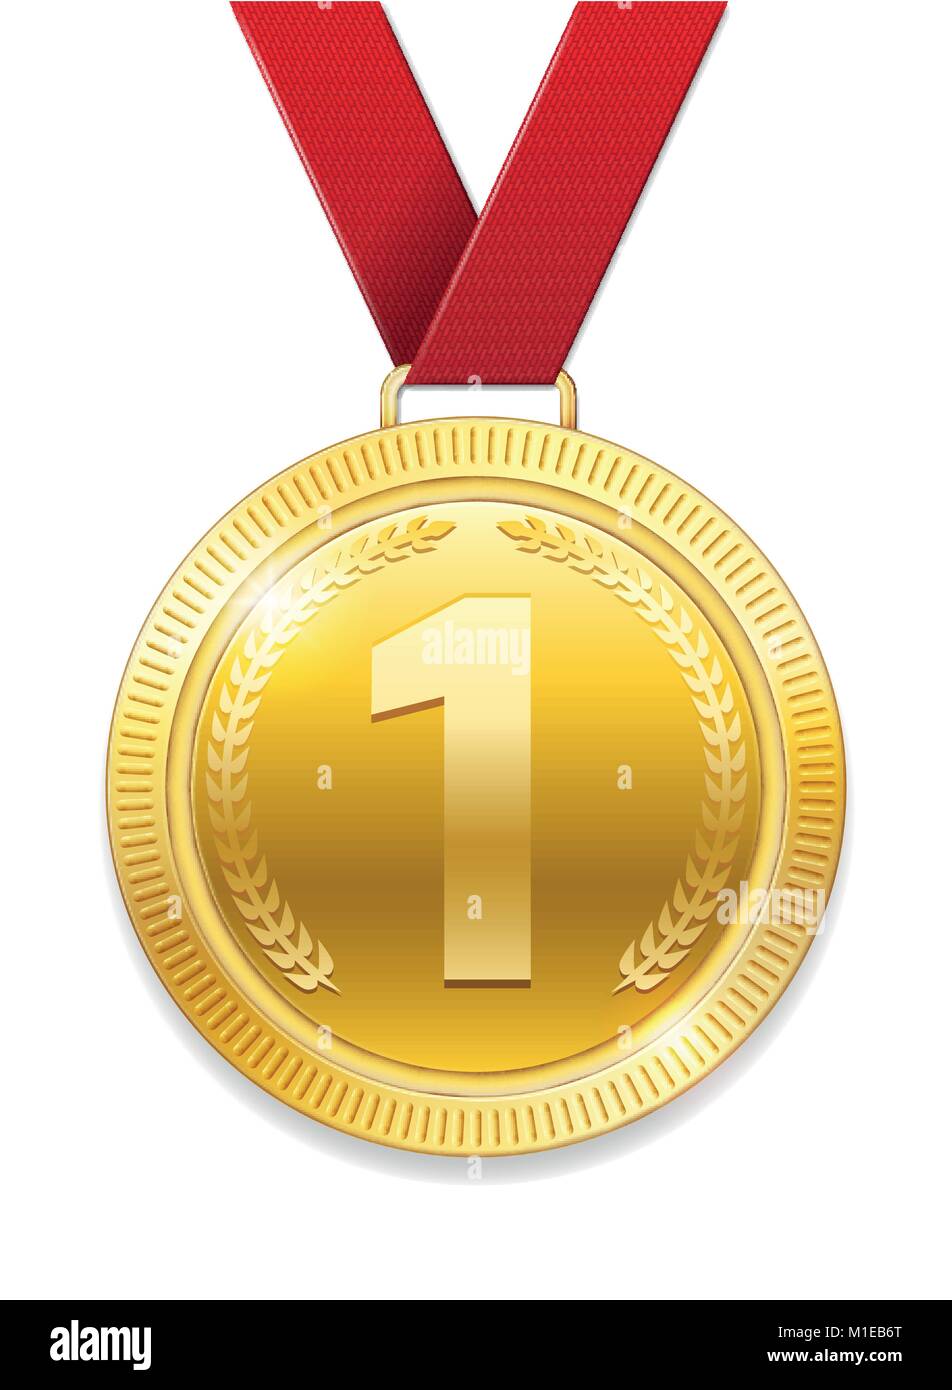 Champion Award Gold Medaille für Sport Preis. Glänzende Medaille mit roter Schleife auf weißem Hintergrund. Vector Illustration Stock Vektor